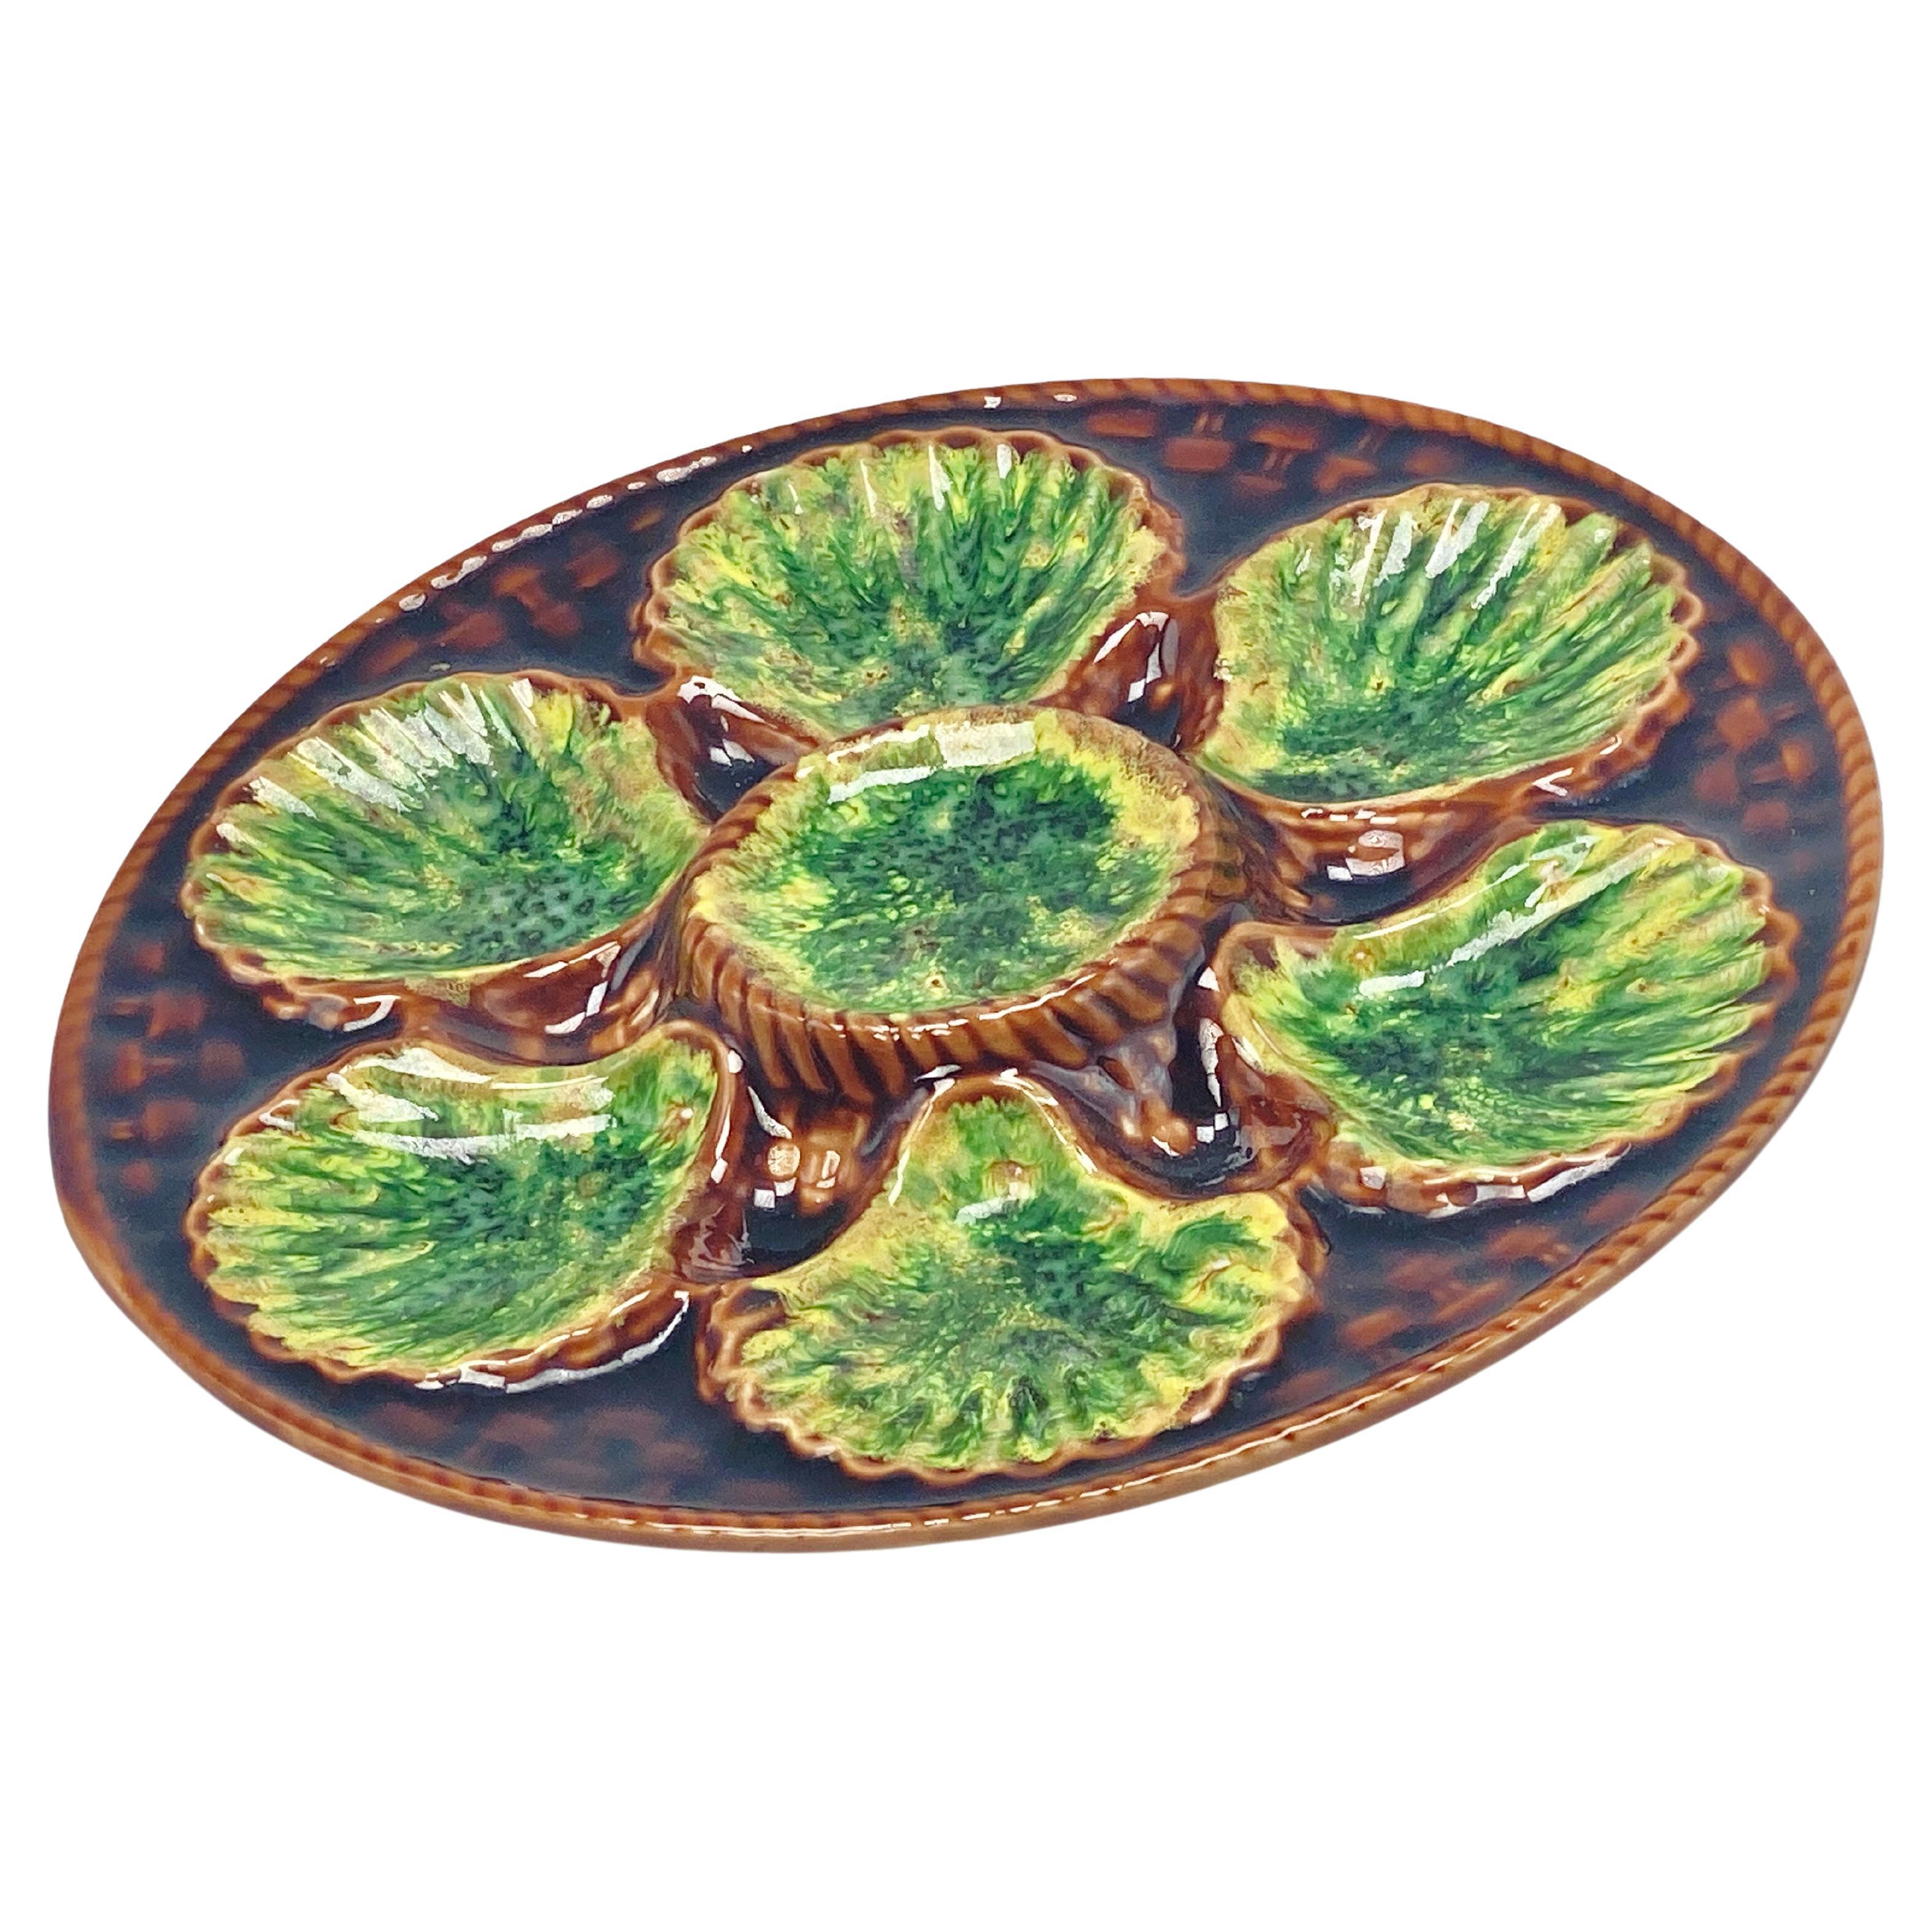 Plato de mayólica verde ostra , principios del siglo XX, color marrón y verde